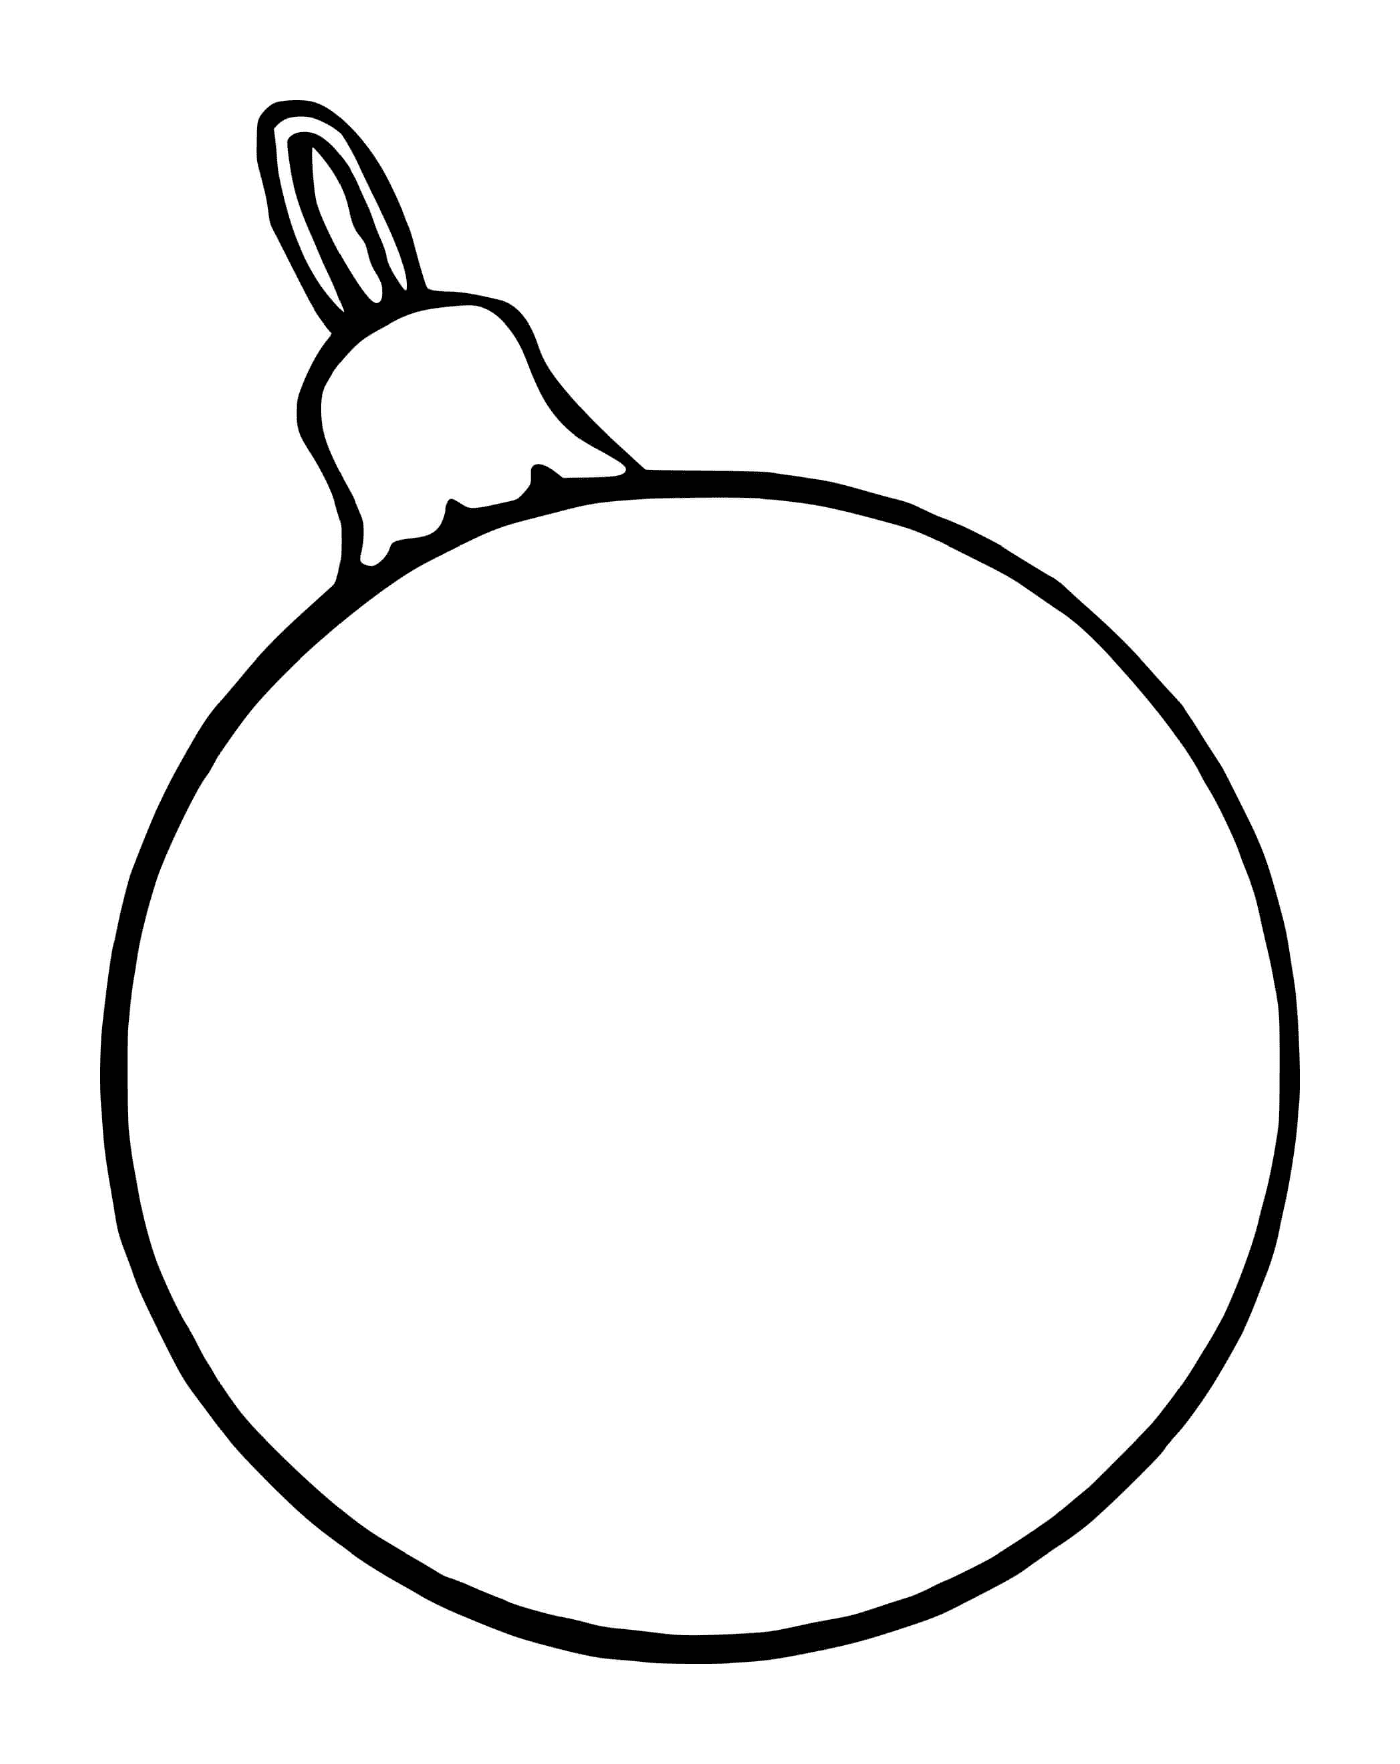  كرة عيد ميلاد بسيطة لشجرة مع تفاح موضوعة على فاكهة بيضاوية 